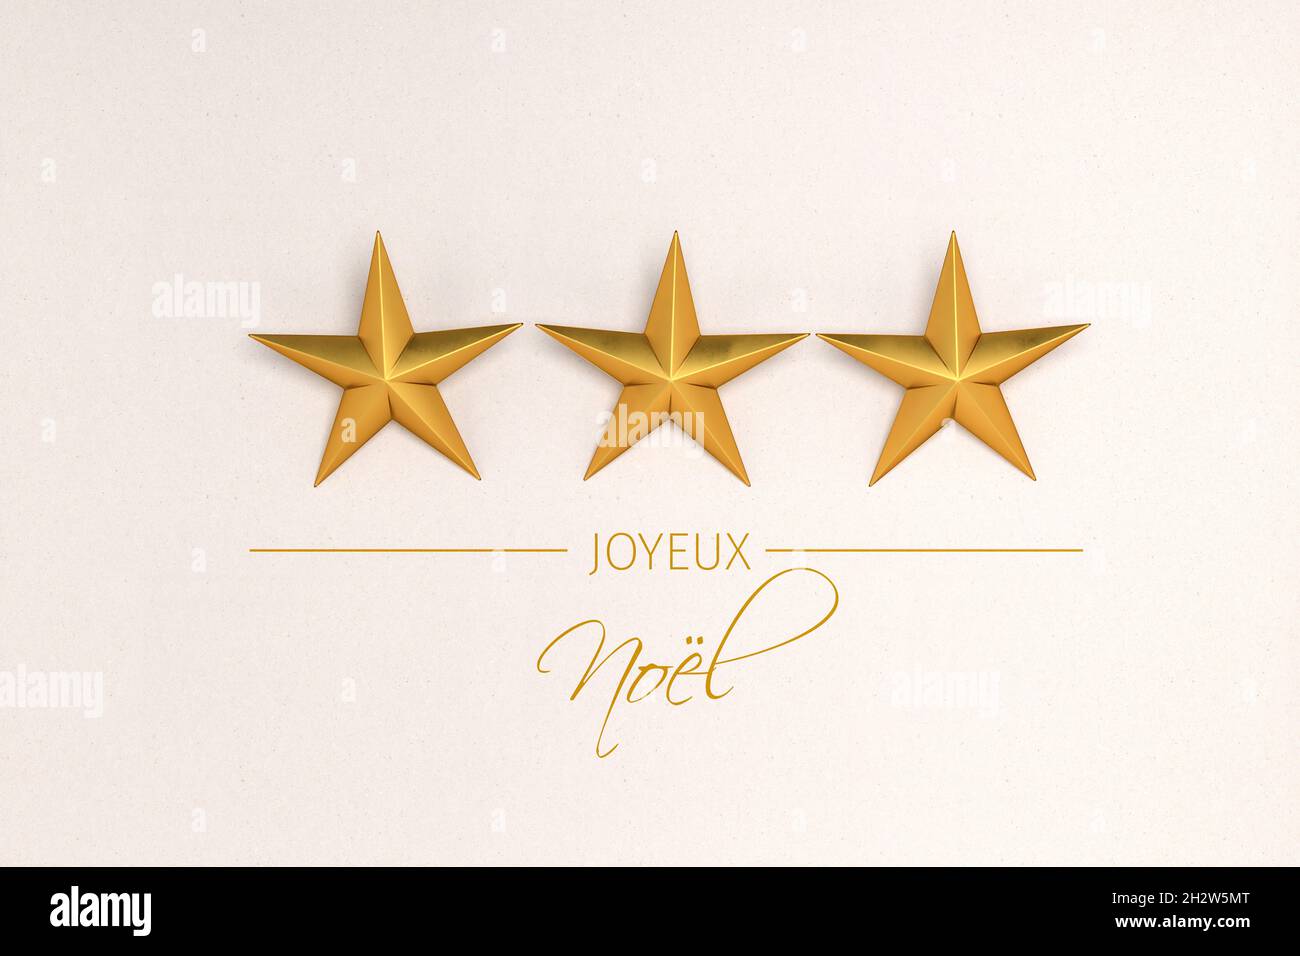 Tre stelle dorate di natale su sfondo cartaceo. Messaggio francese "Joyeux Noël" (buon Natale) qui sotto. Foto Stock